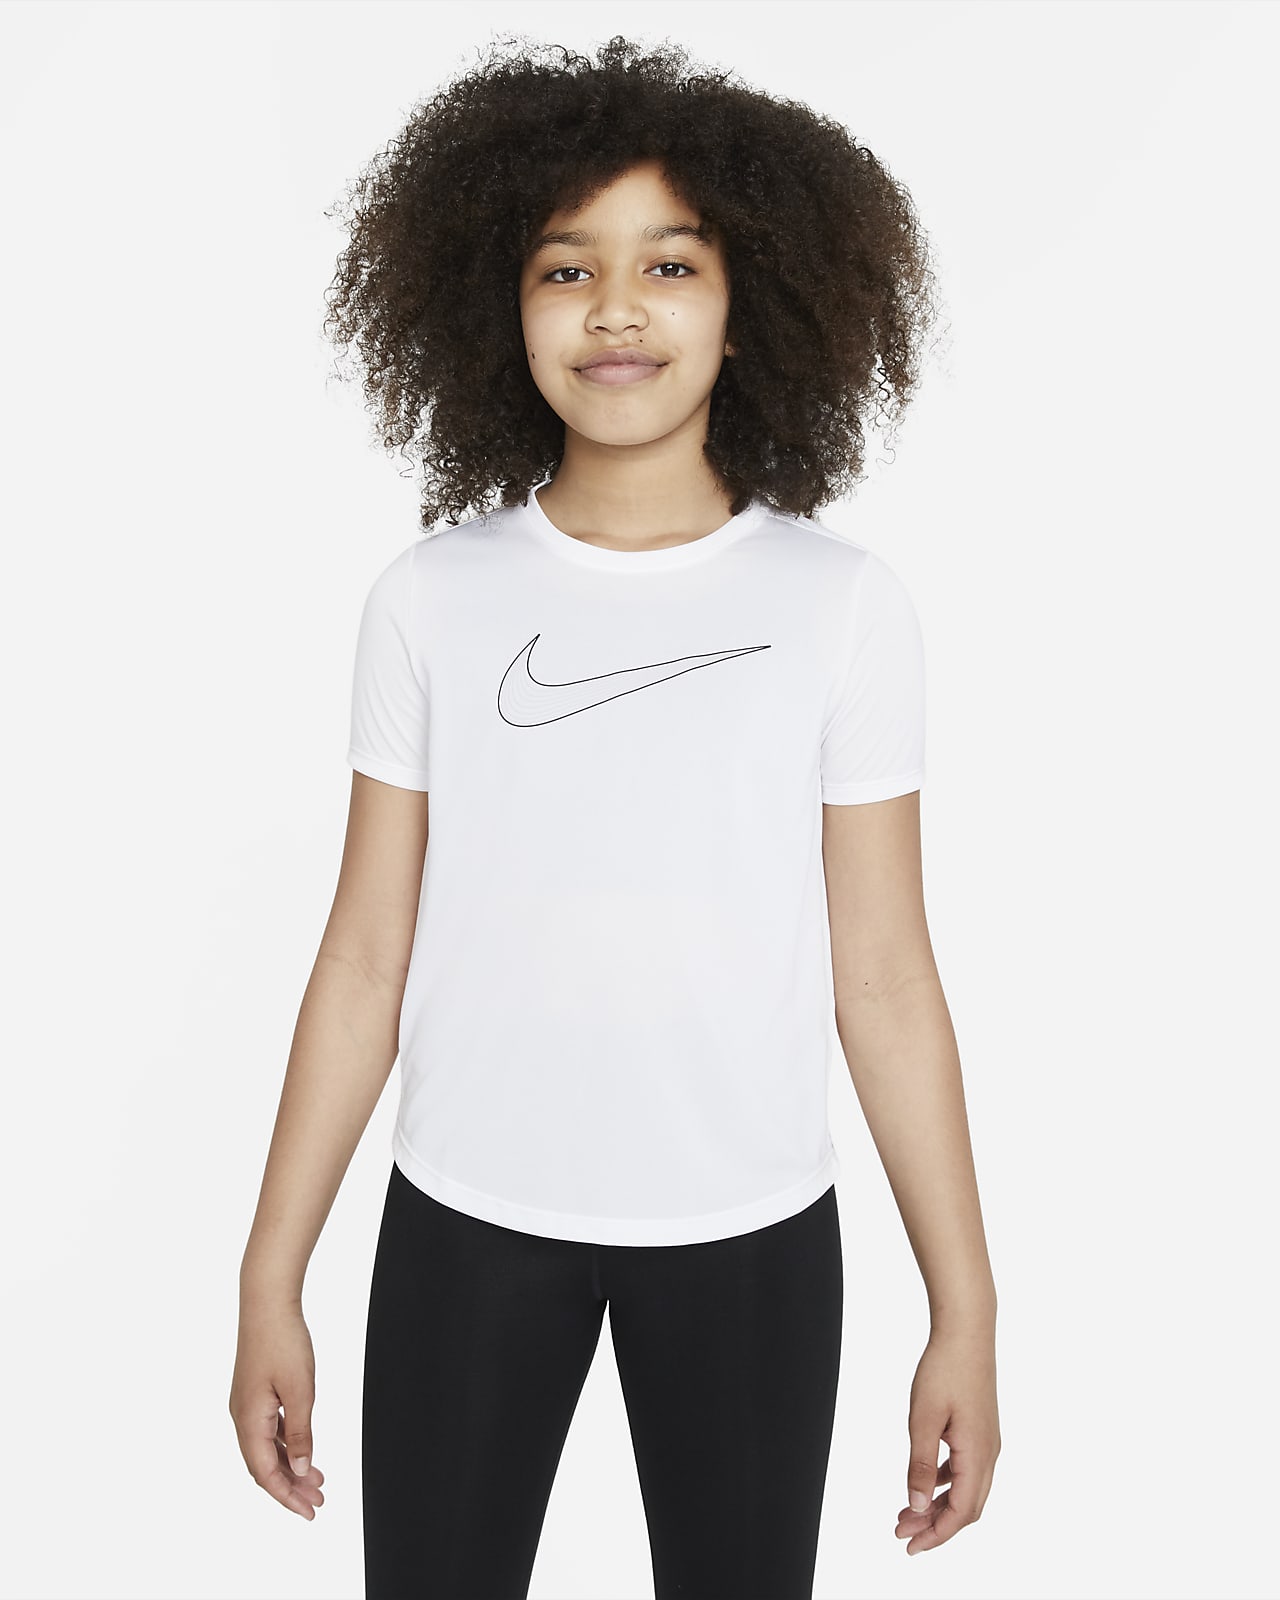 เสื้อเทรนนิ่งแขนสั้น Dri-FIT เด็กโต Nike One (หญิง)